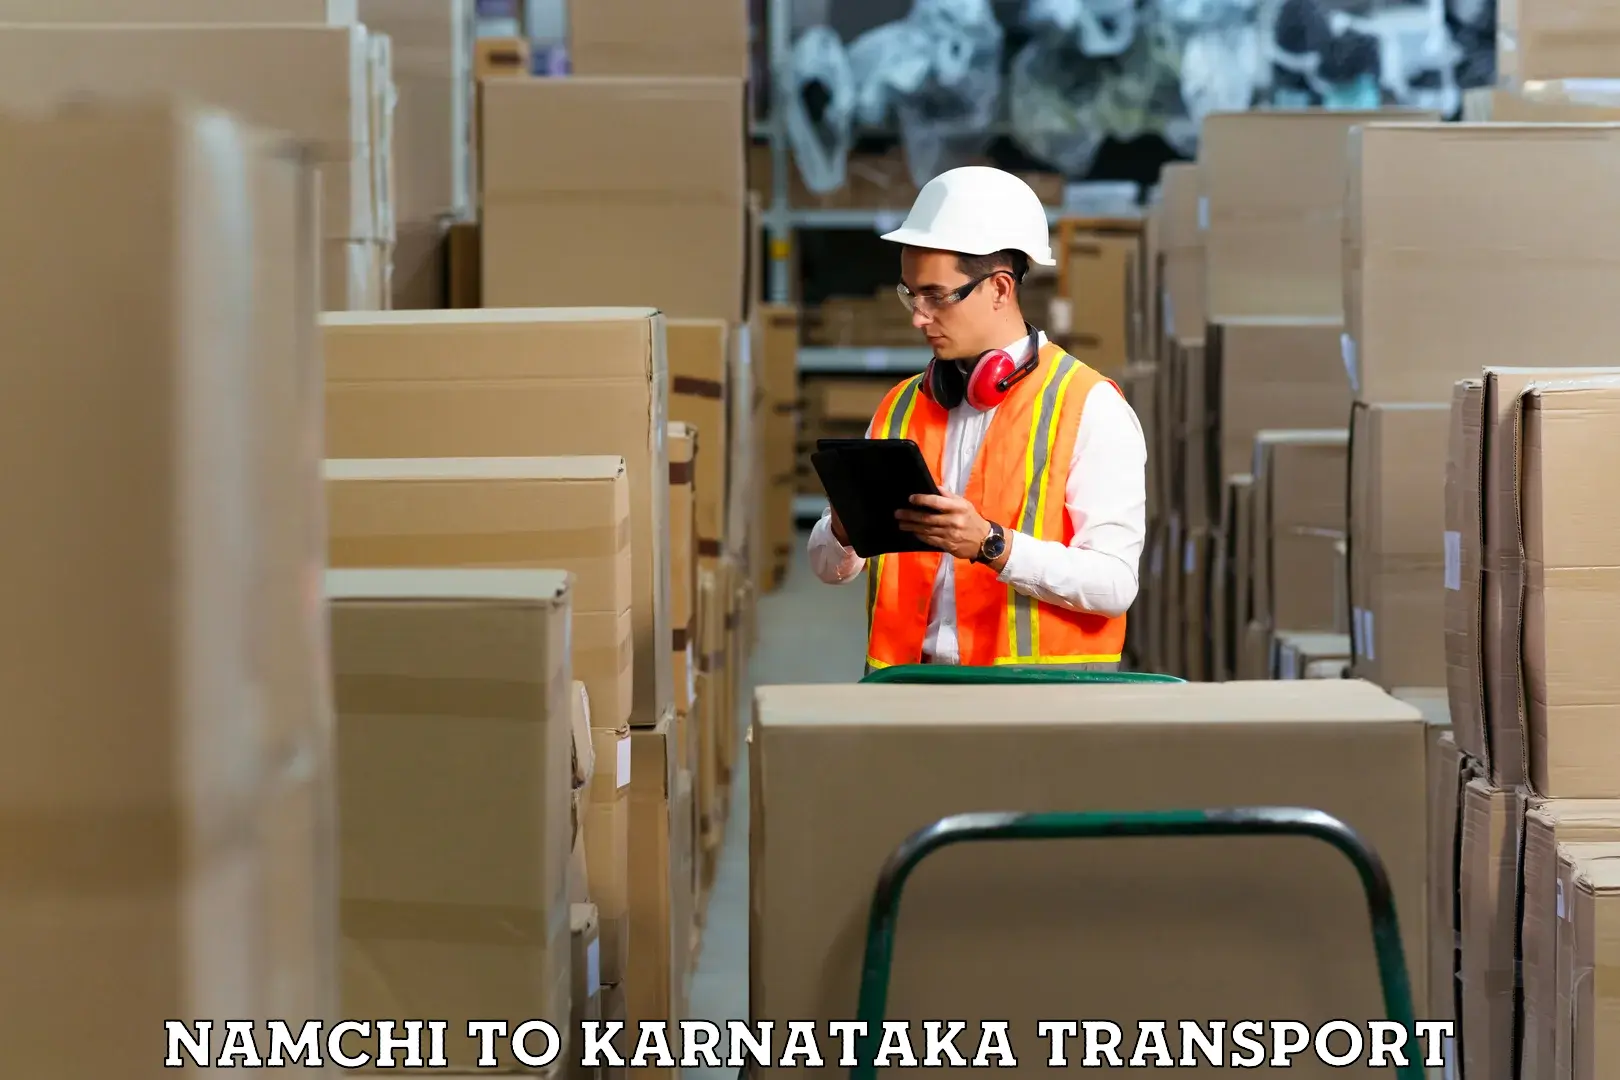 Two wheeler transport services Namchi to Kumta